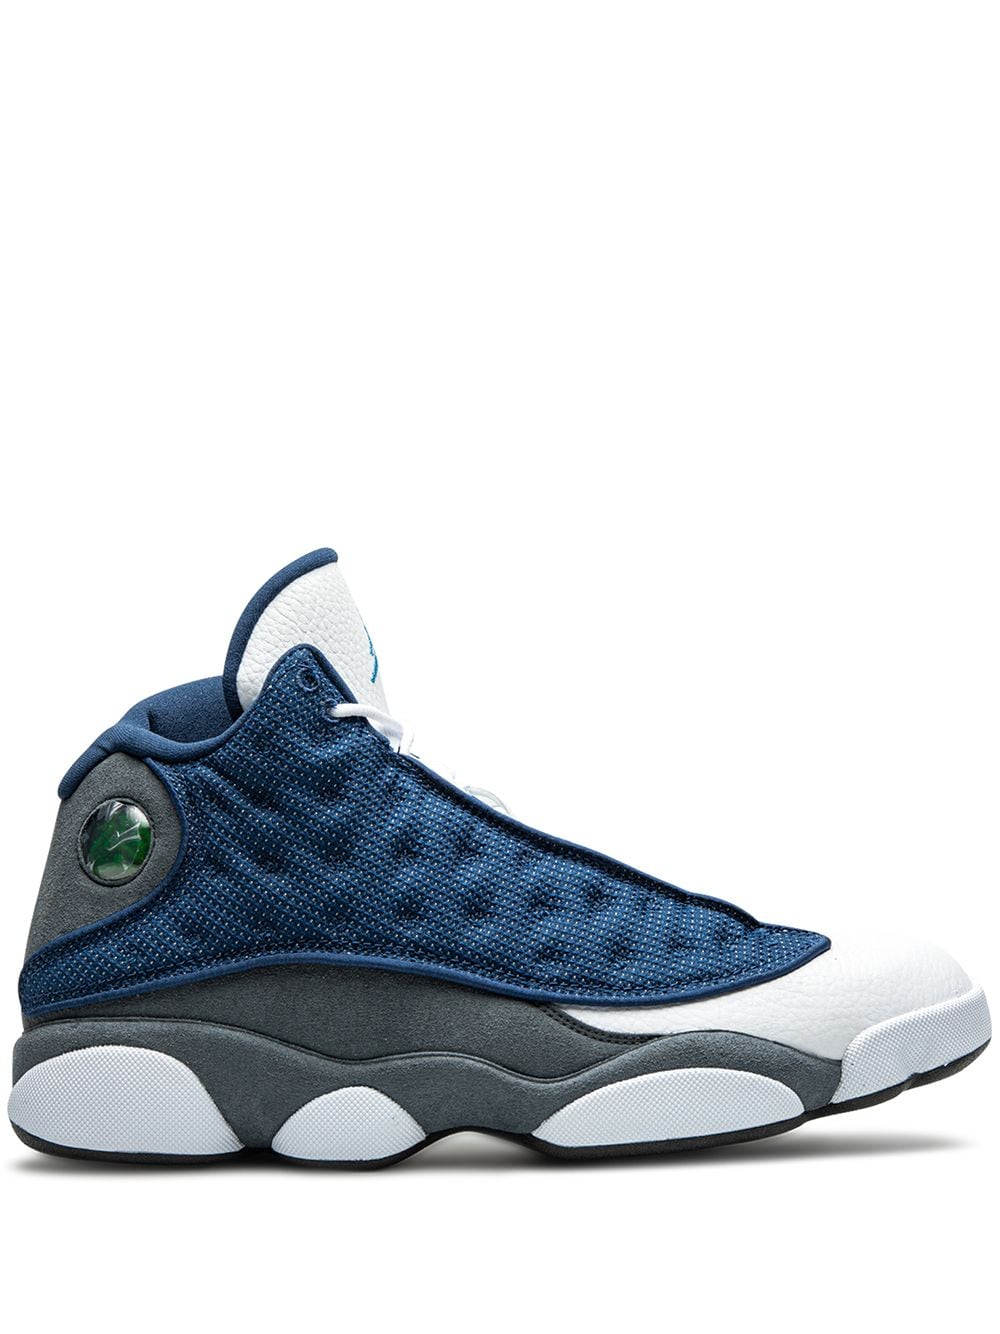 Jordan Air Jordan 13 Retro "Flint 2020" sneakers - Blue von Jordan